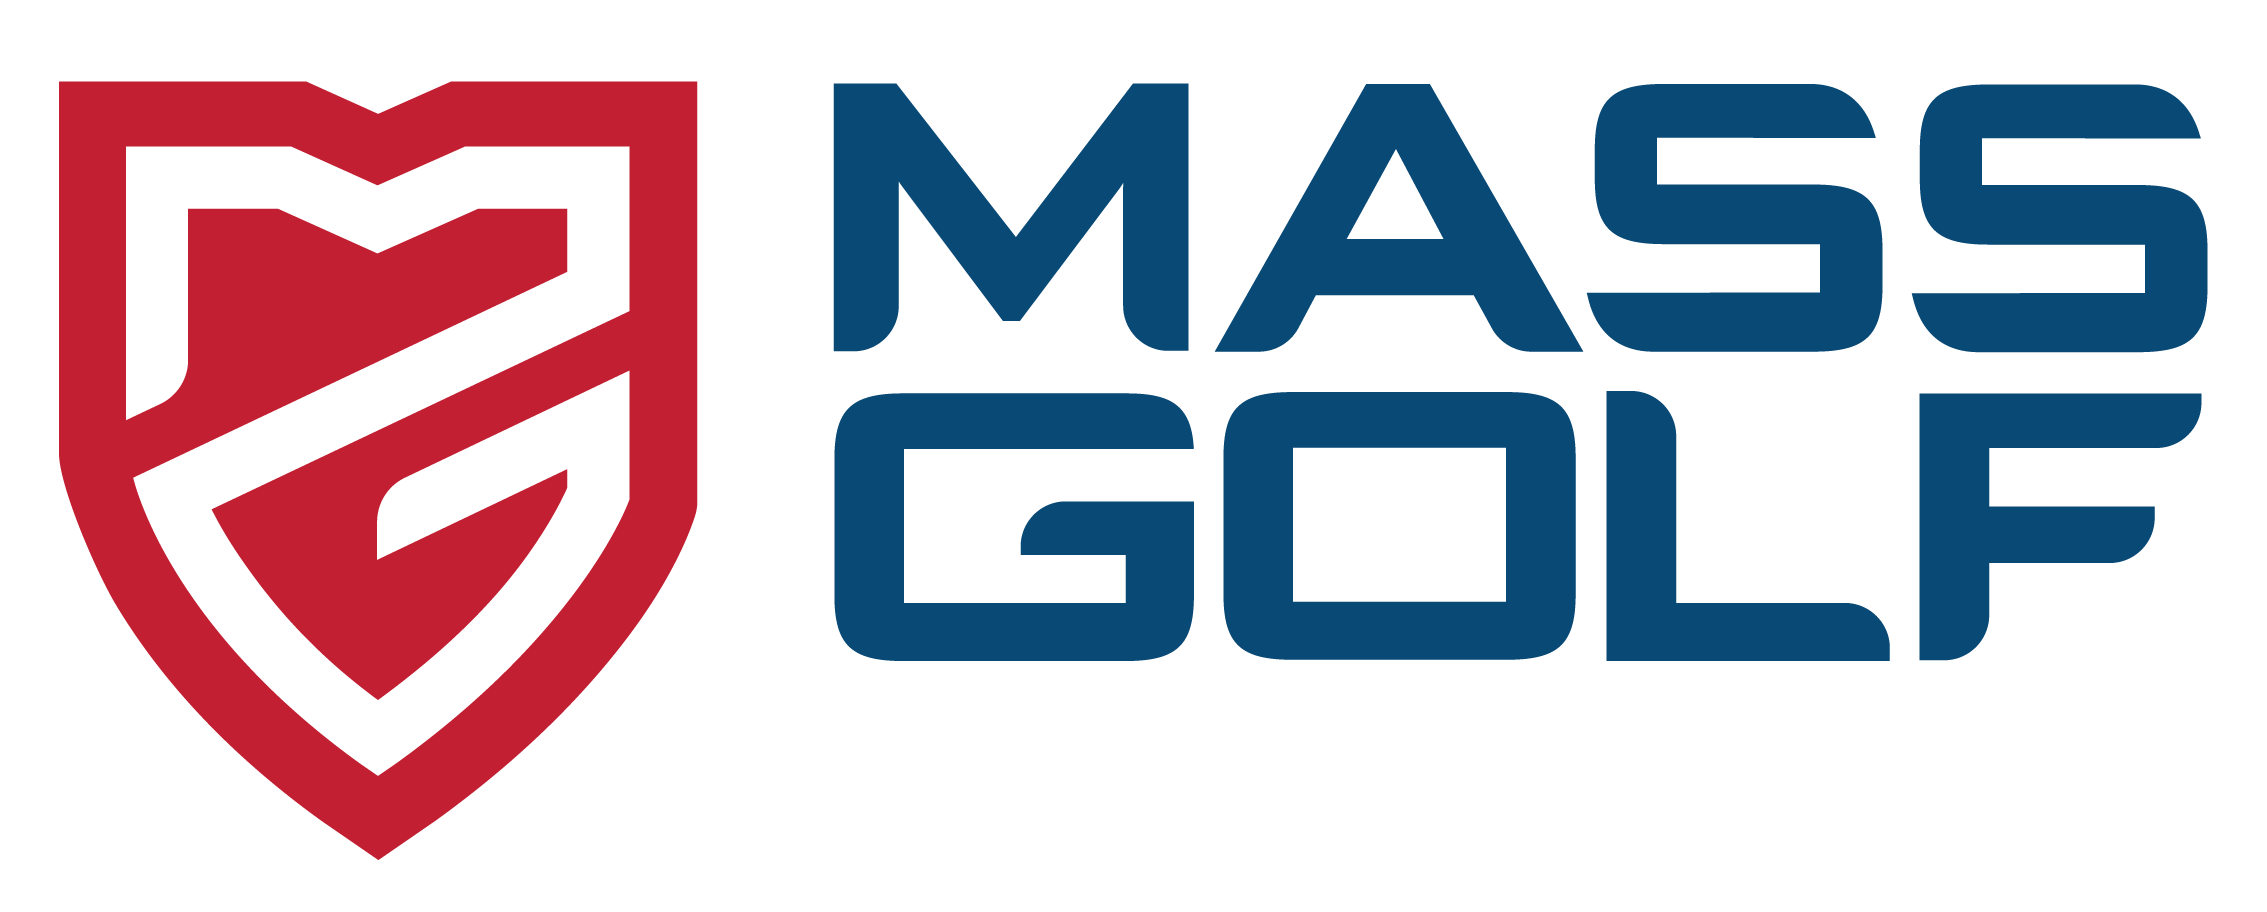 Mass Golf logo.png